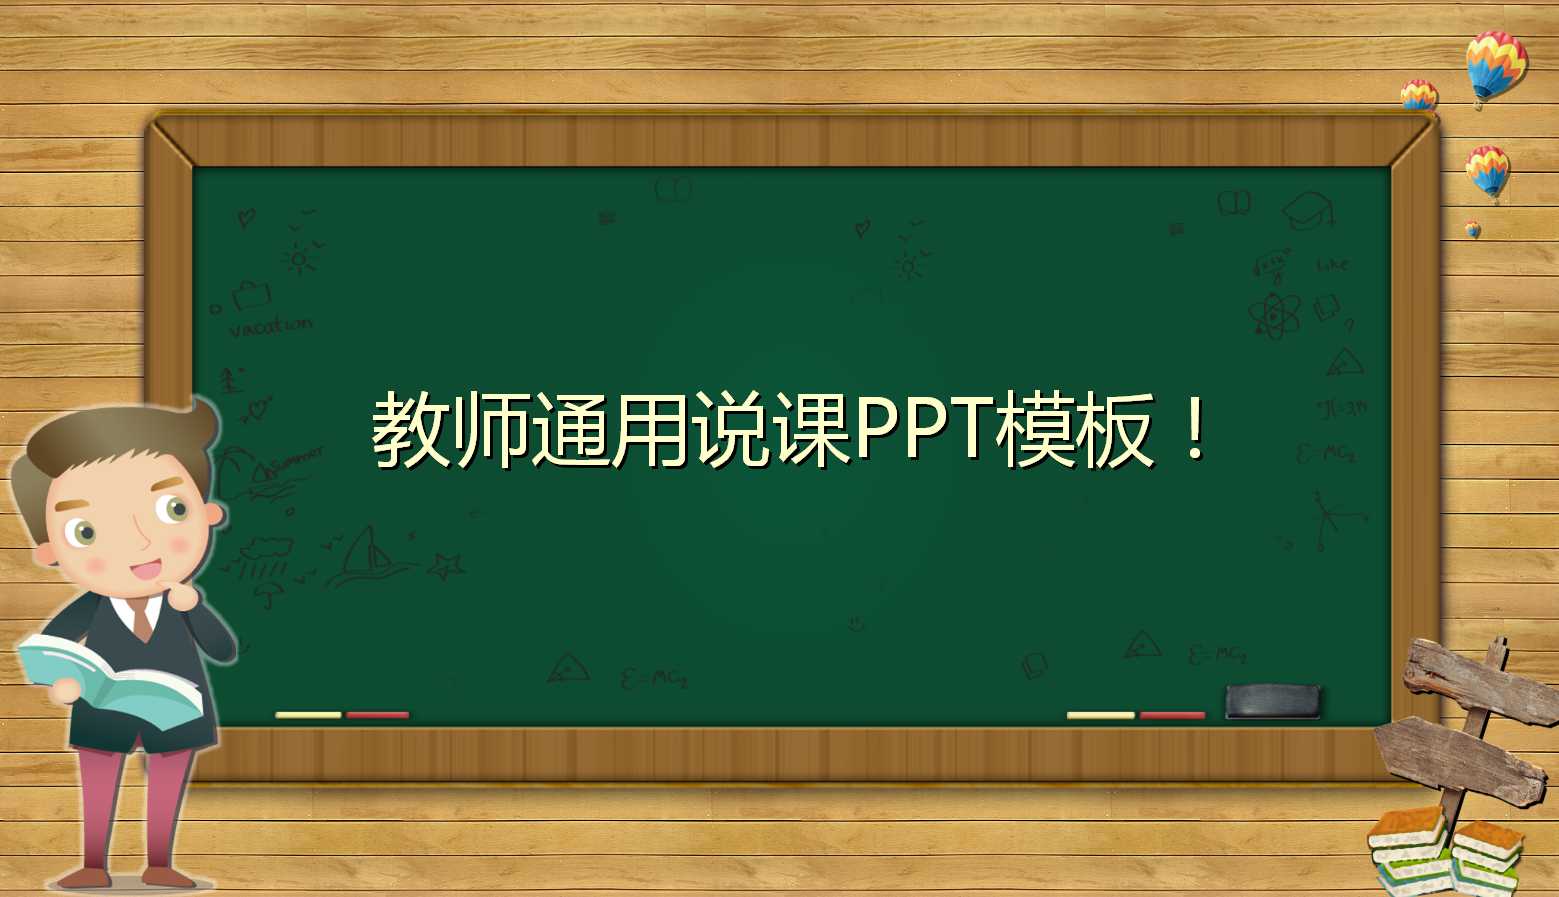 黑板主题简约风教师通用公开课ppt模板